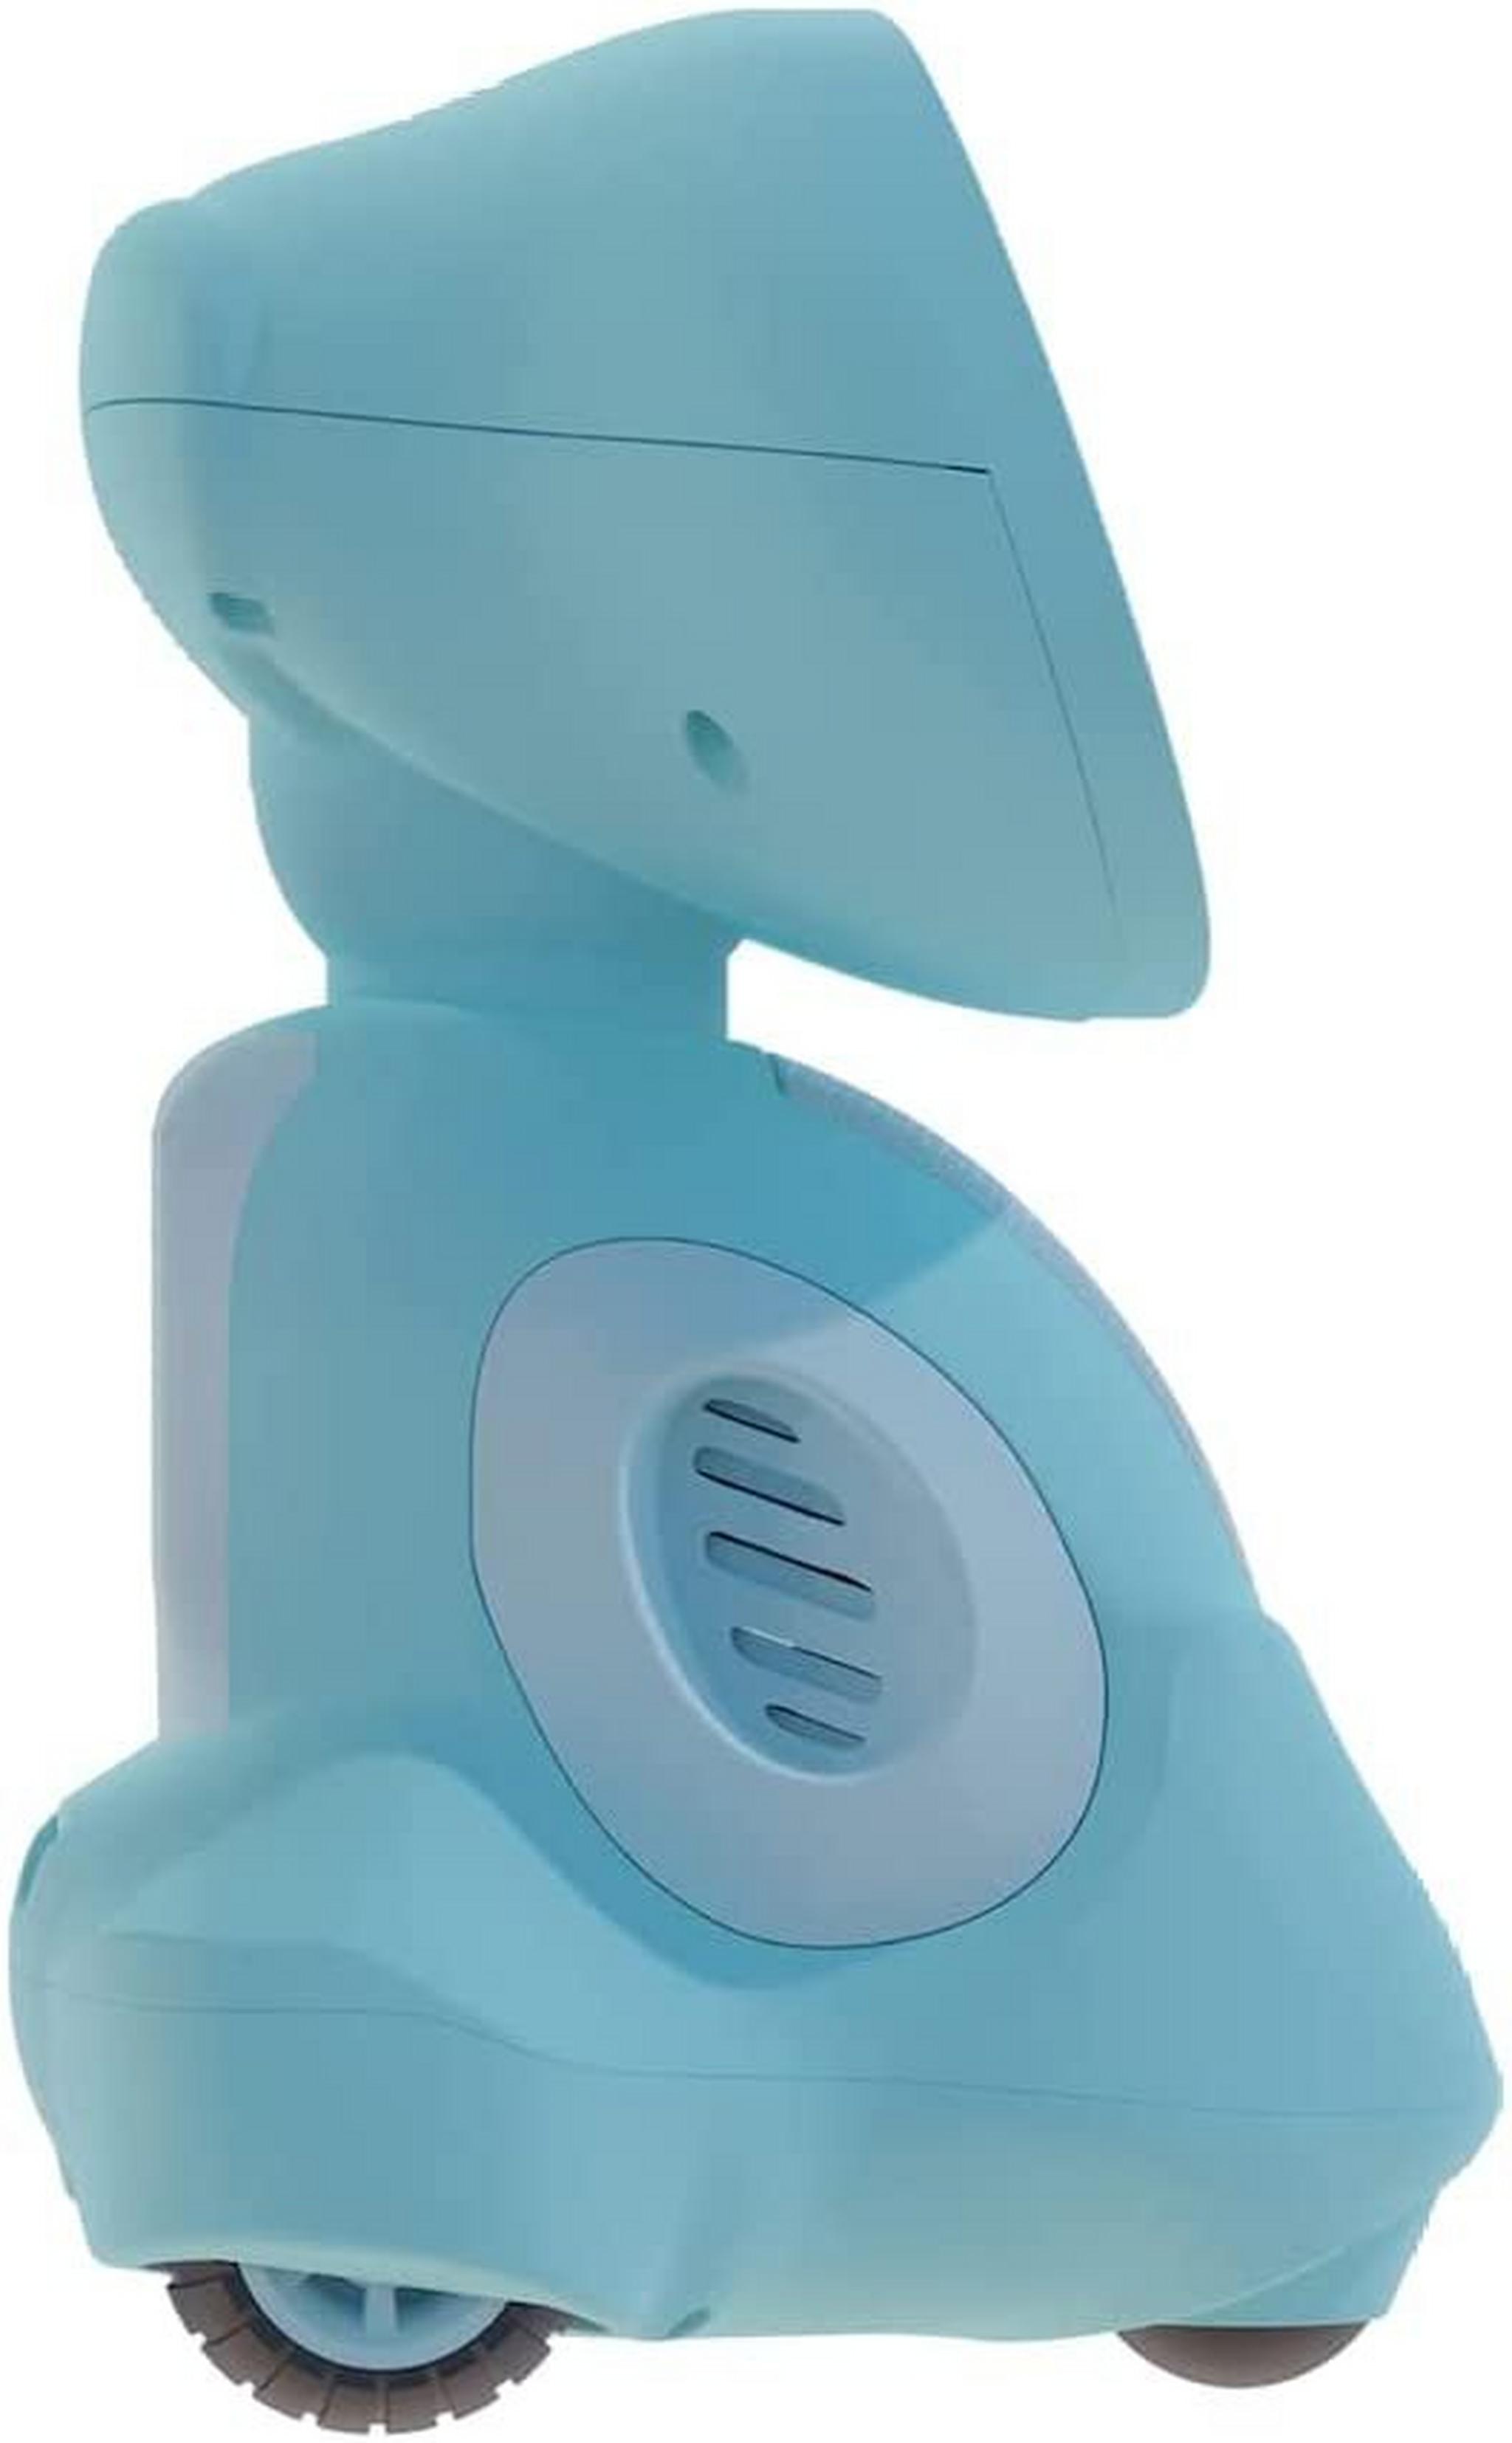 الروبوت التعليمي ميكو 3 مدعوم بالذكاء الاصطناعي - أزرق